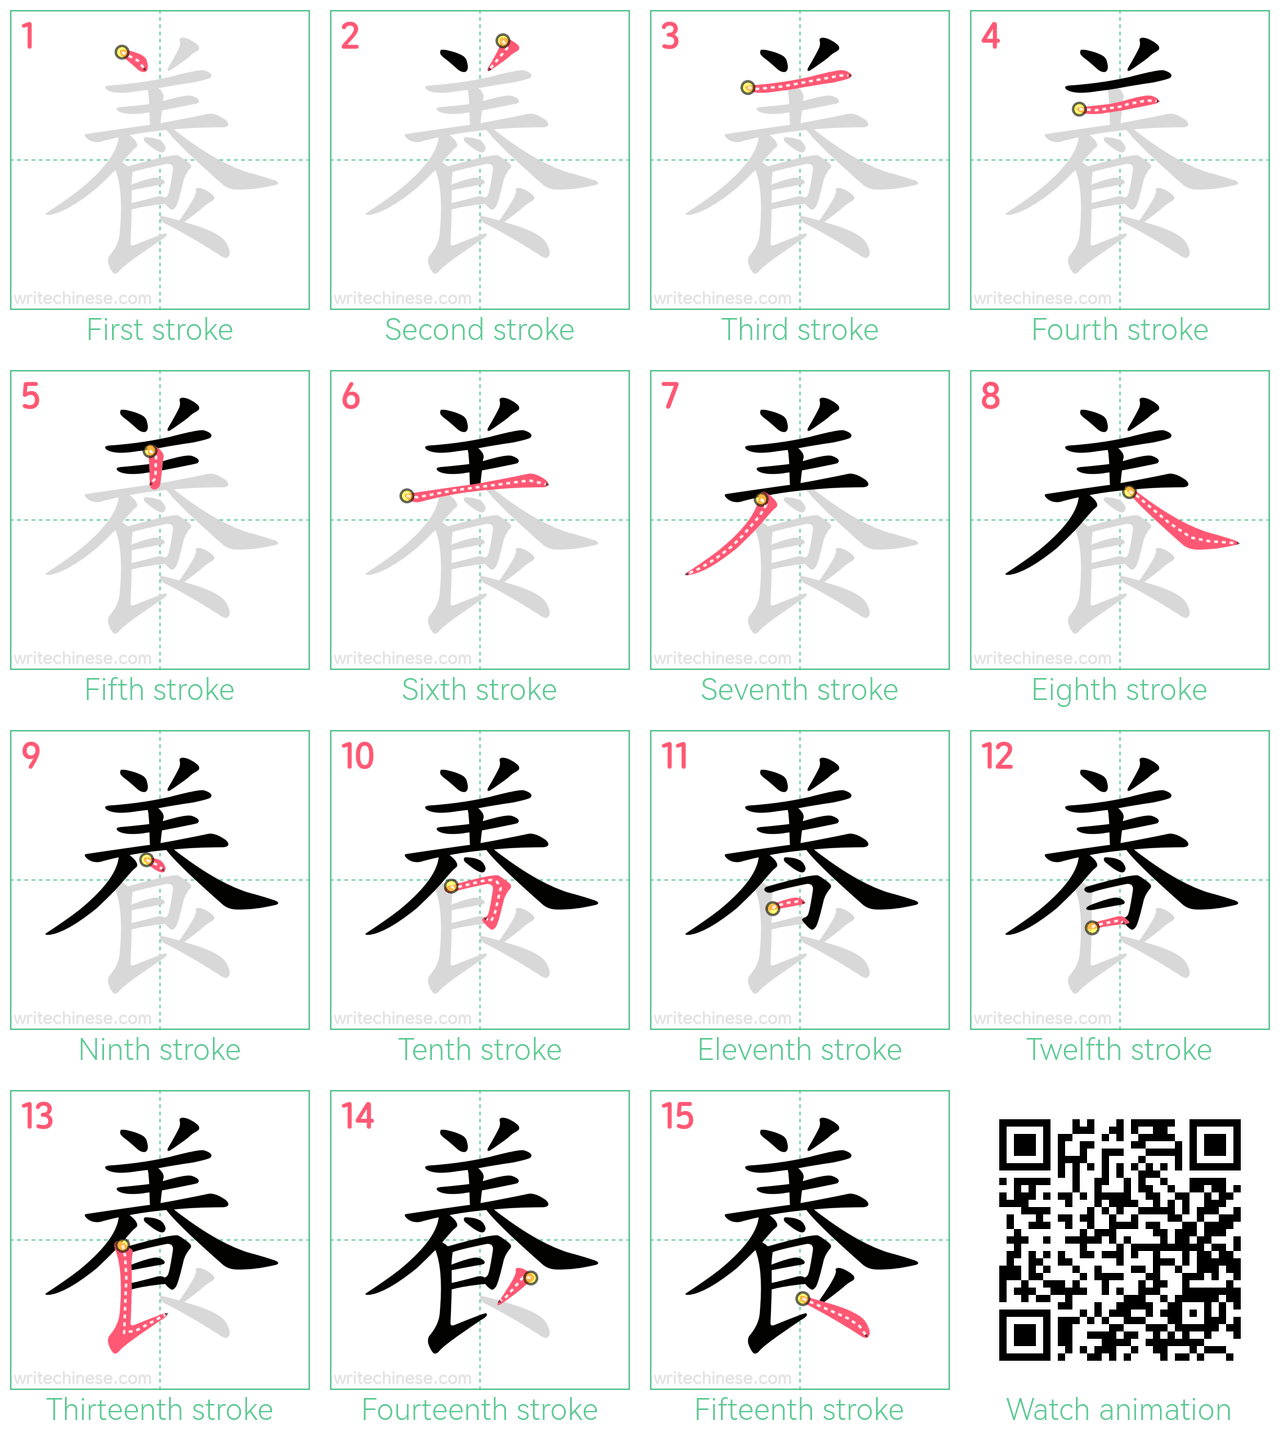 養 step-by-step stroke order diagrams